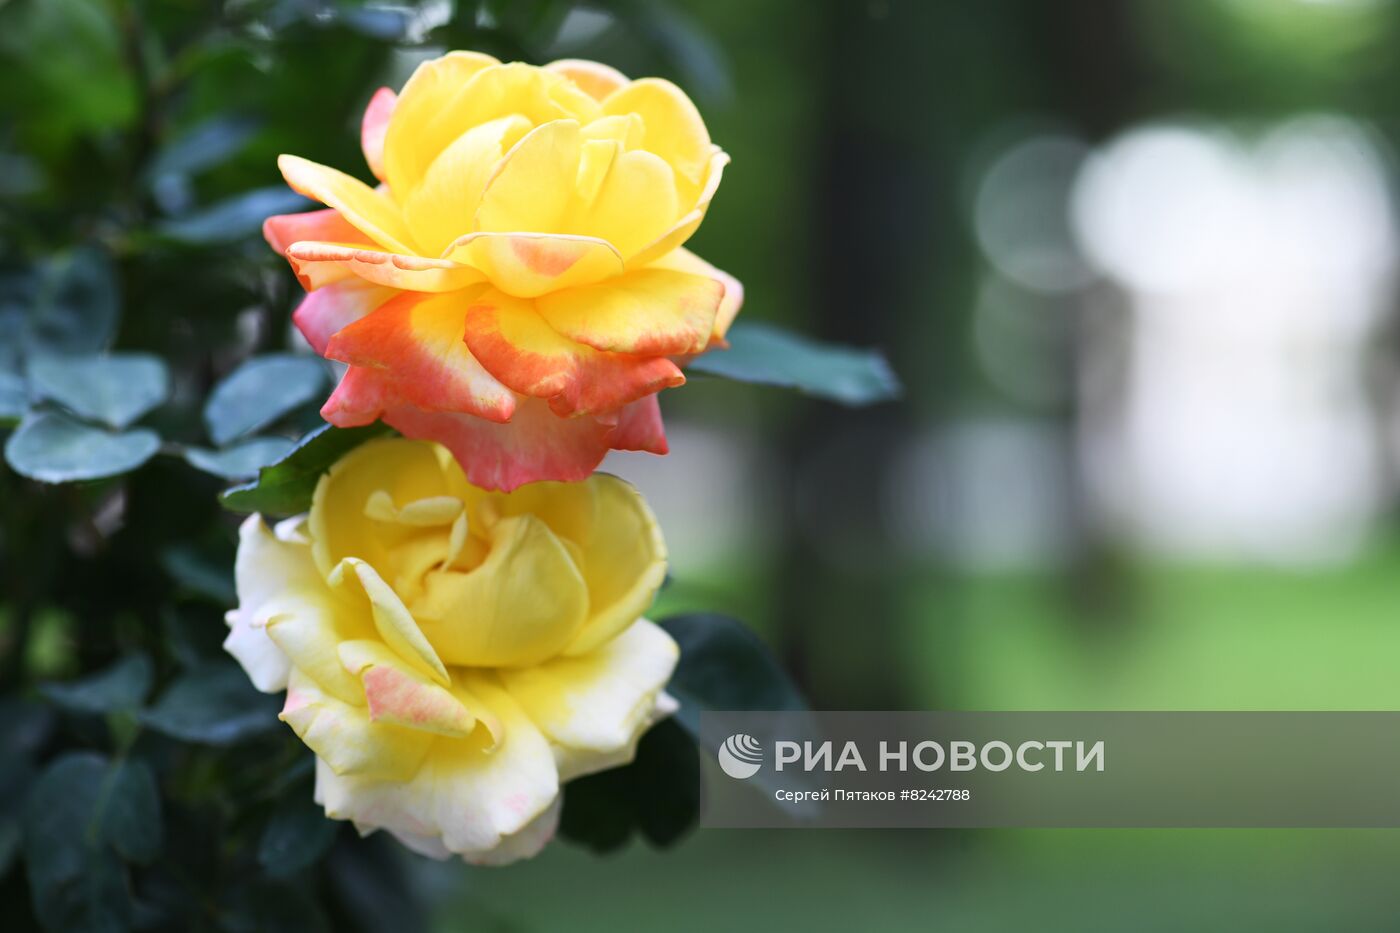 Фестиваль роз в музее-усадьбе "Архангельское"